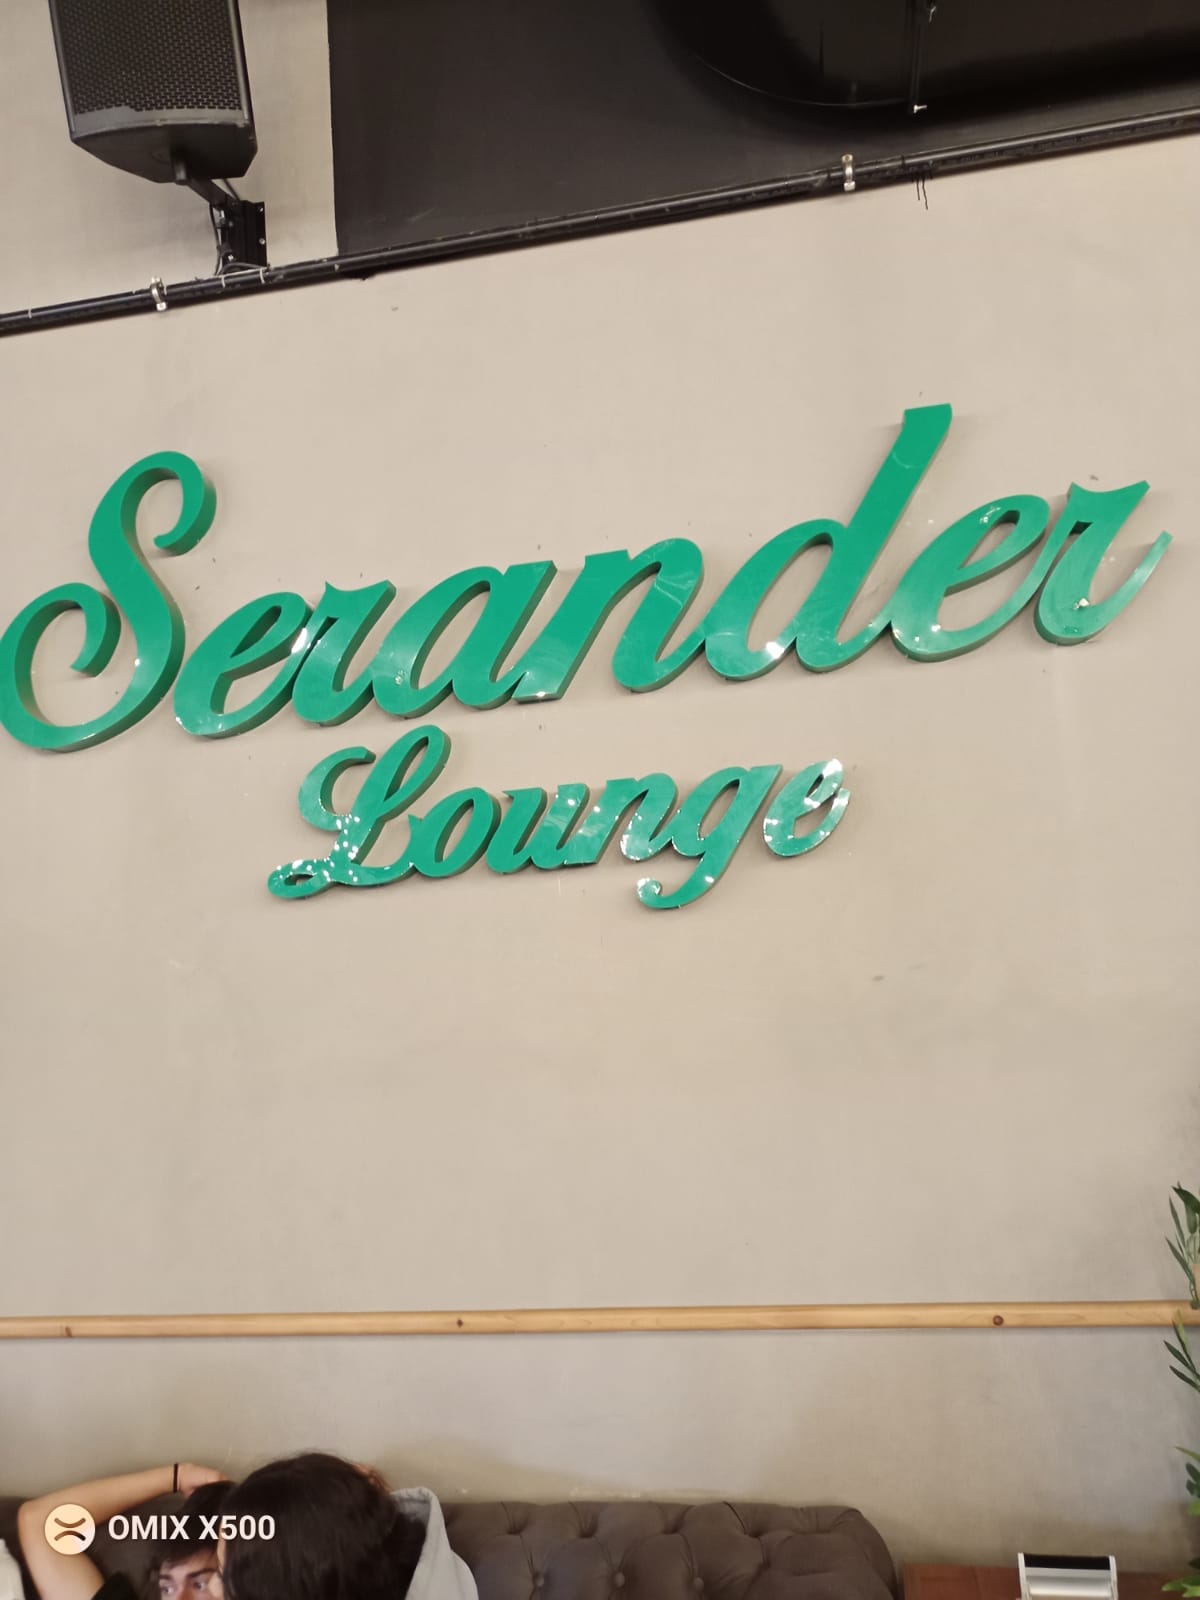 Serander Grup 6 şubesi sizlere profesyonel hizmet vermeye devam ediyor.